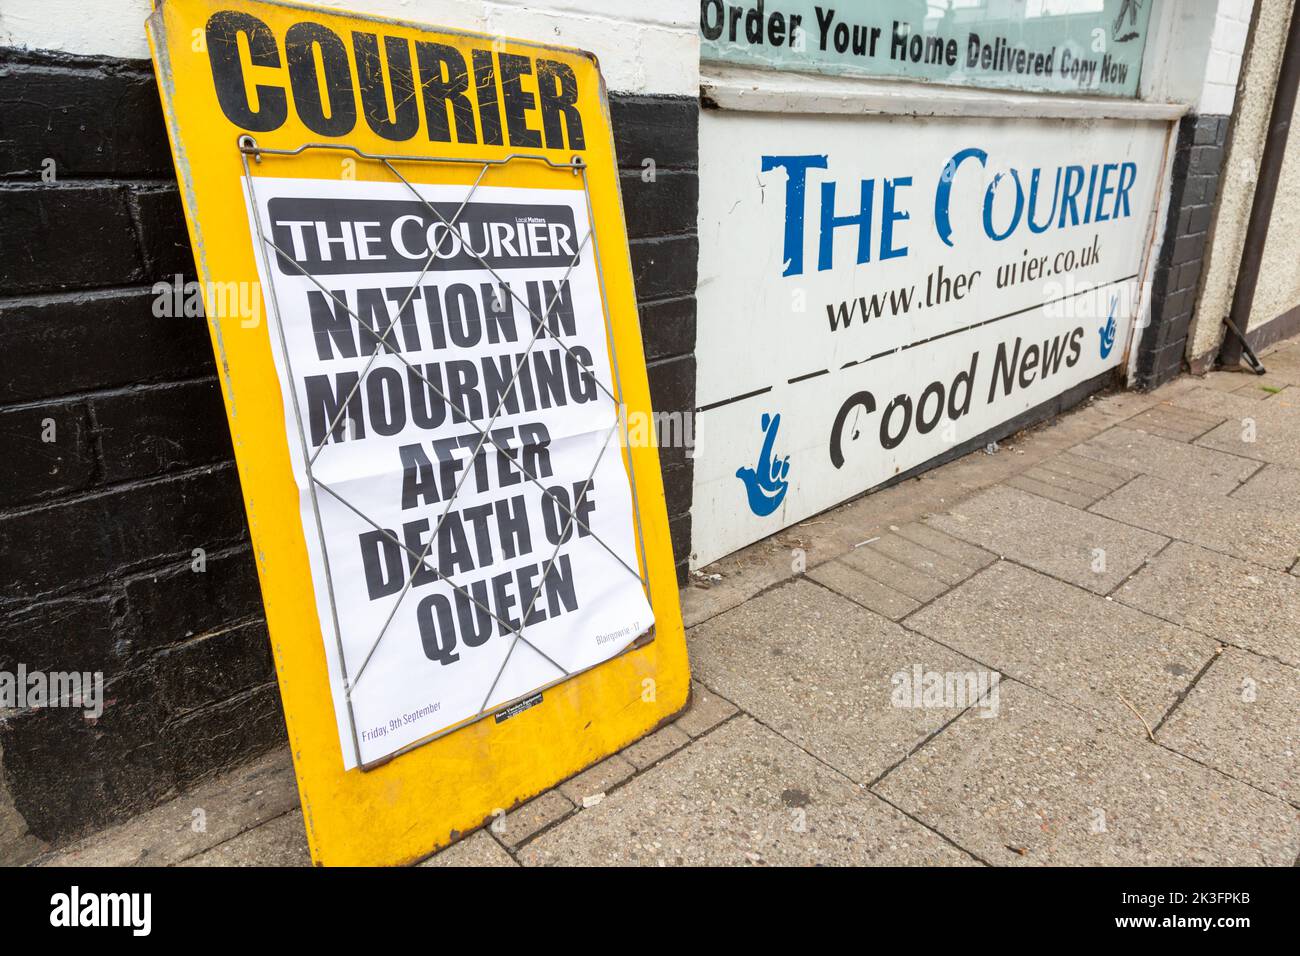 Newspaper headline showing the Queen's death, 2022 UK Stock Photo